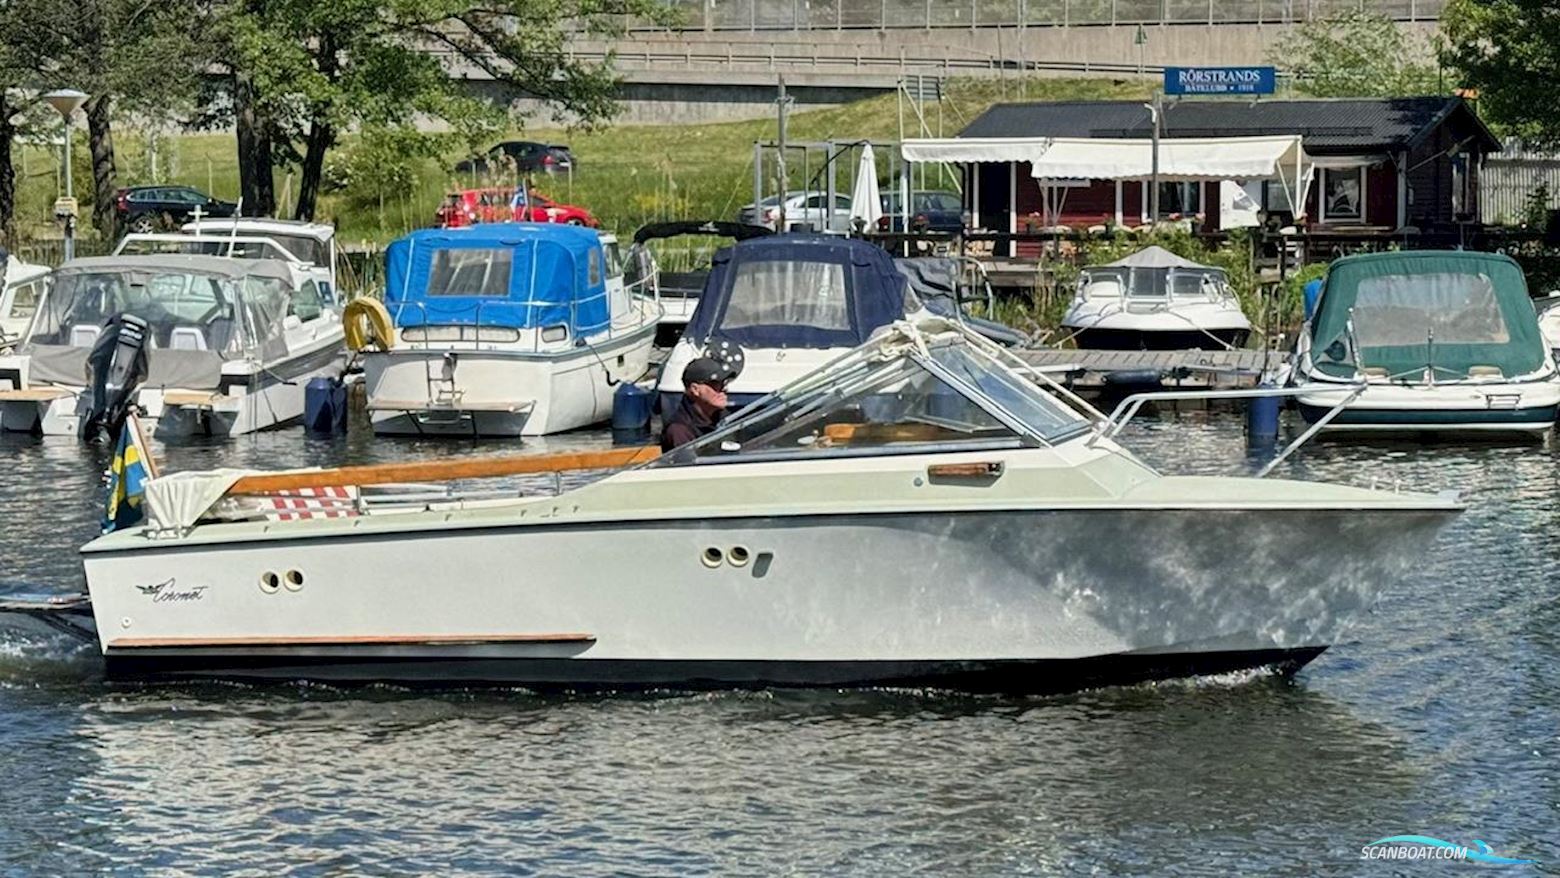 Coronet 21 Daycruiser Motorbåt 1976, med Volvo Penta motor, Sverige